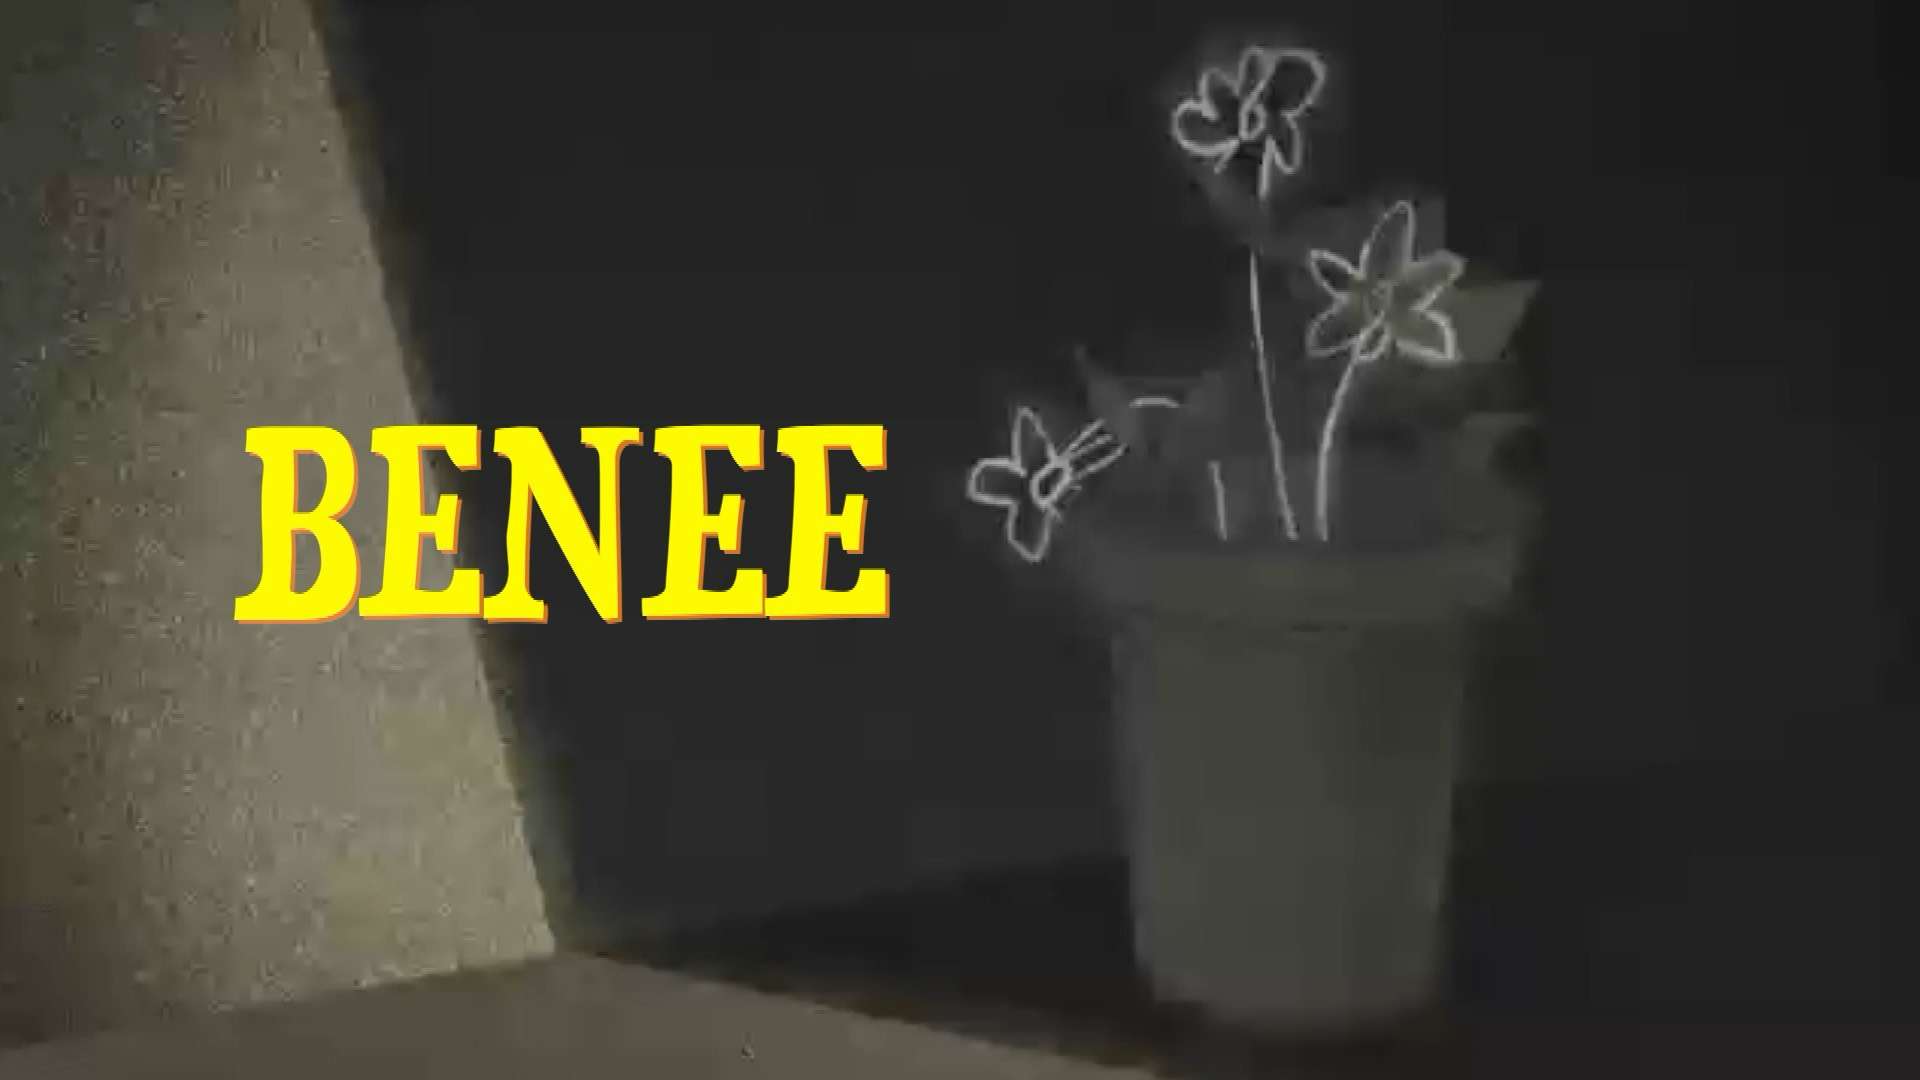 JEI - BENEE （Lyrics Video)